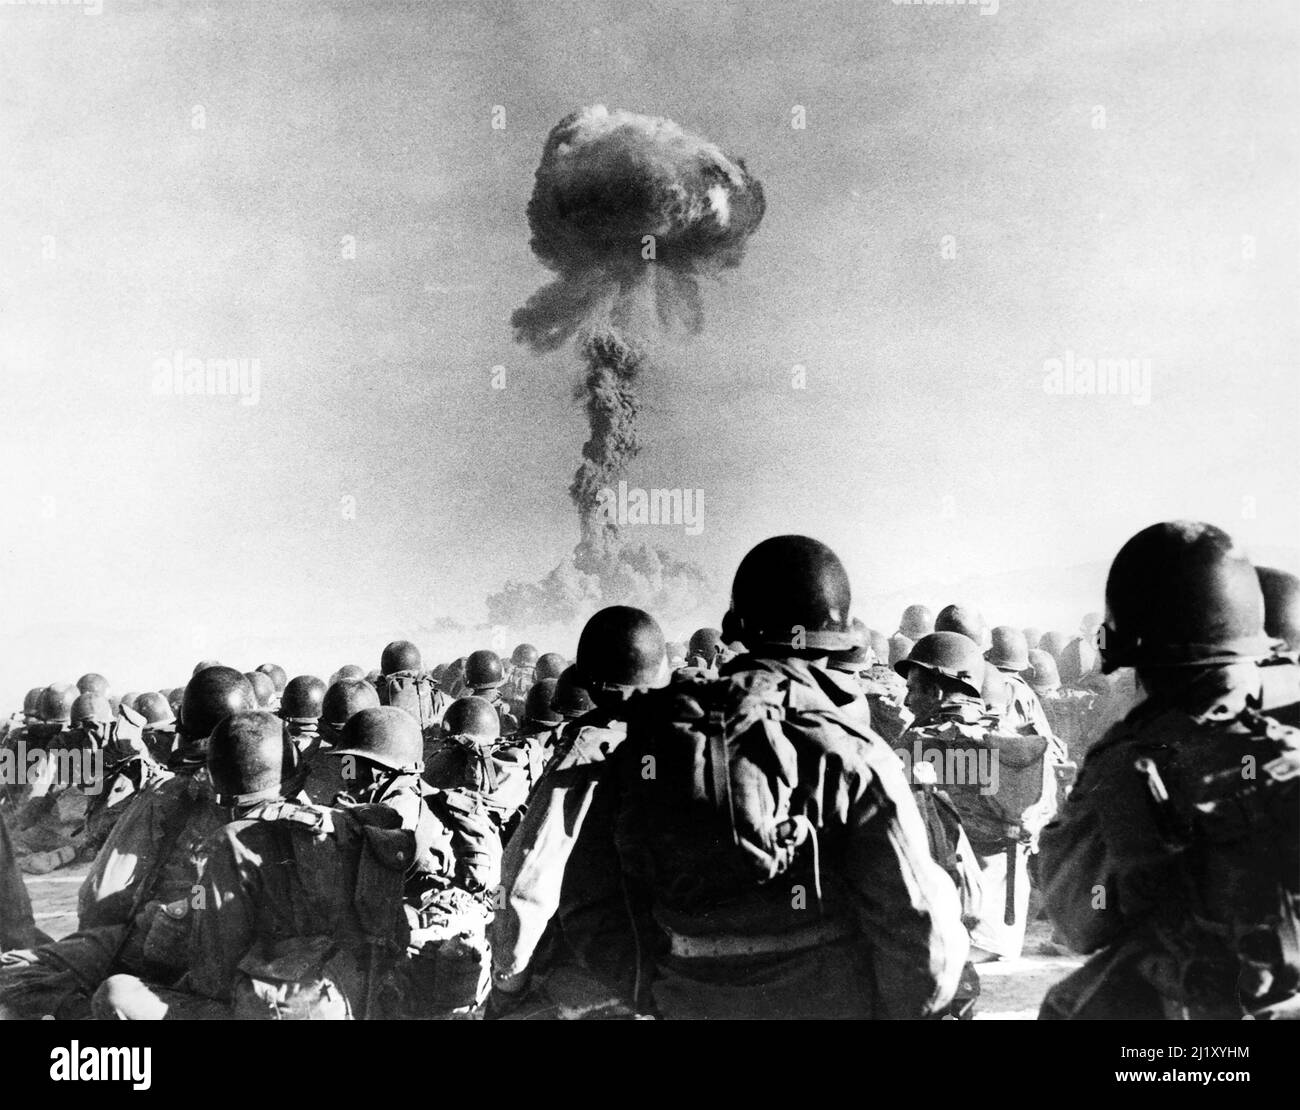 Test della bomba atomica. Operazione Buster-Jangle - Dog Test, Desert Rock i, Nevada Nuclear Test Site, novembre 1951. Foto Stock